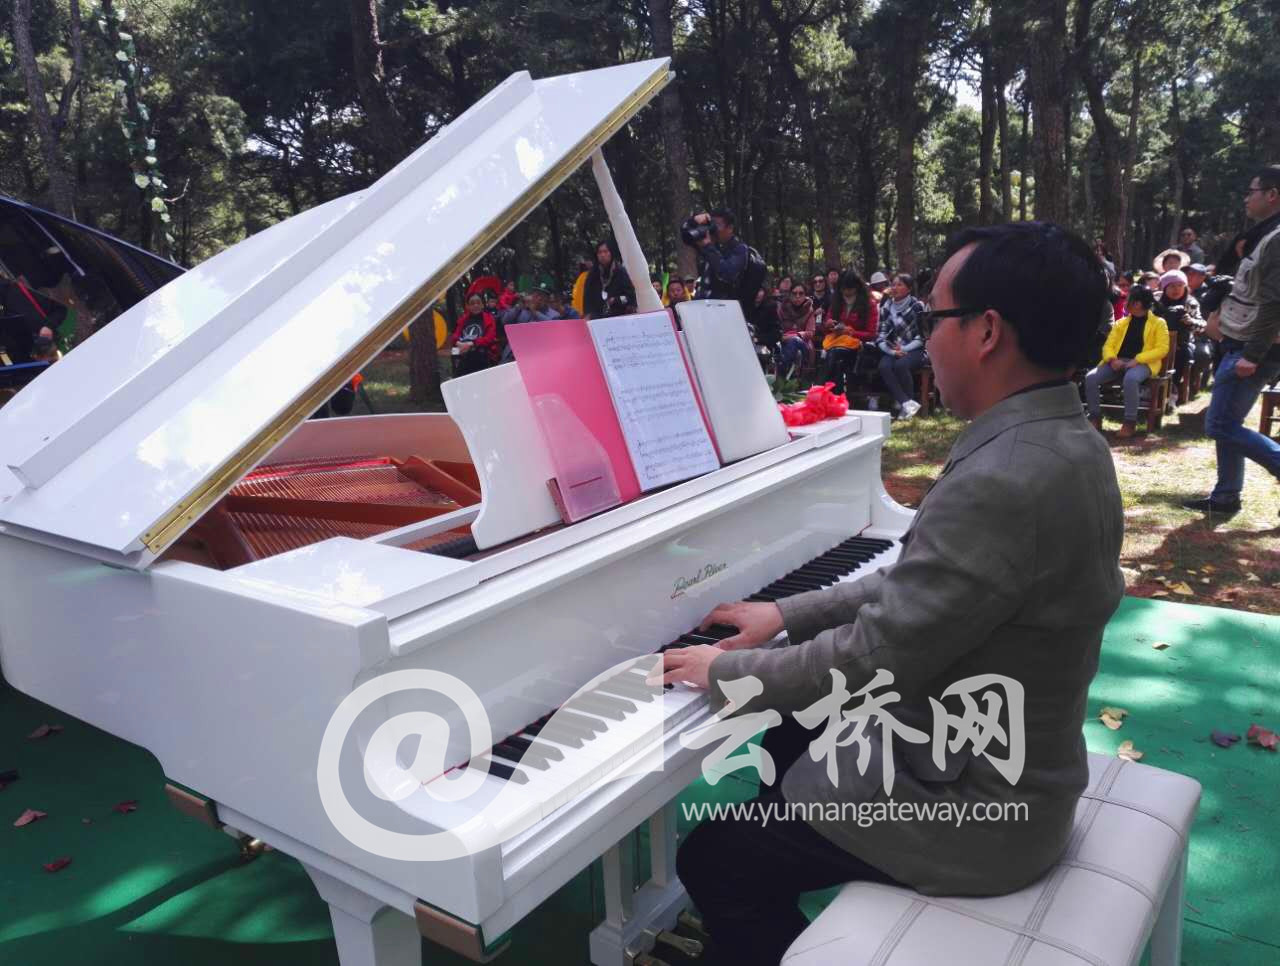 ชาวเมืองคุนหมิงพากันไปชมงานดนตรีป่าไม้ที่สวนเฮยหลงถาน